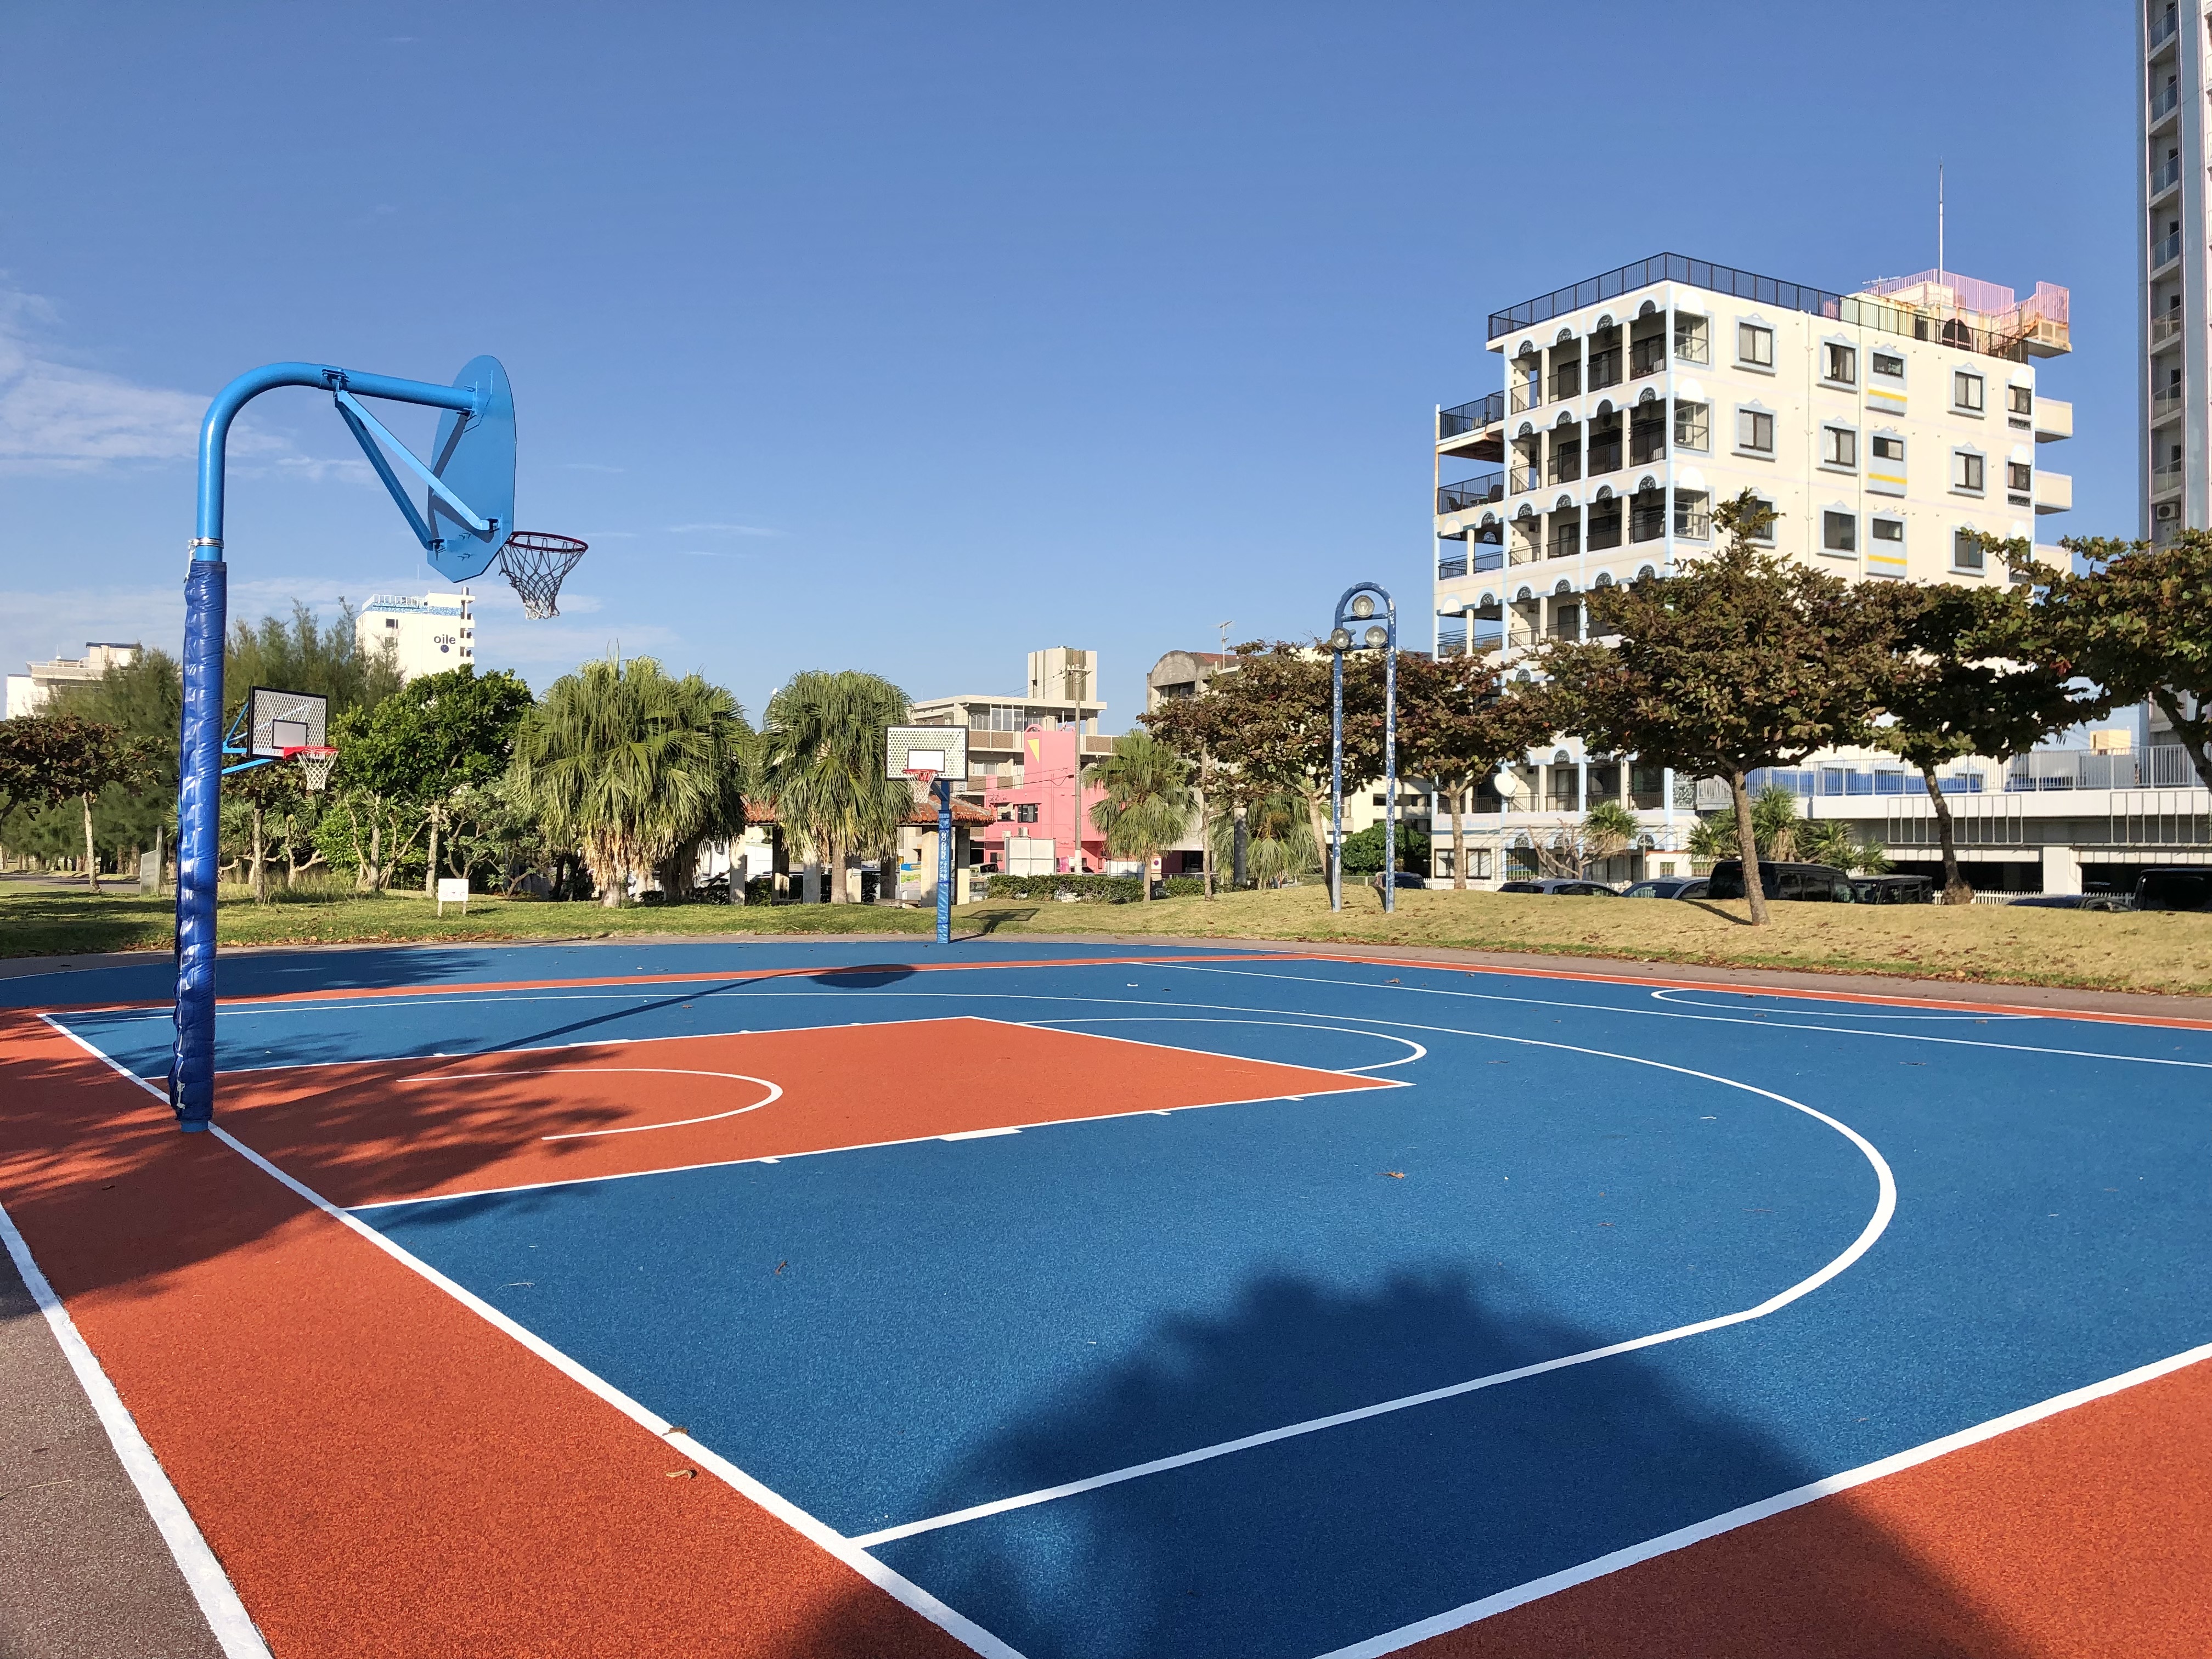 アラハビーチ隣接の安良波公園内 バスケットボールコート が工事完了しリニューアルされました 美ら浜つーしん 沖縄県北谷町の地域情報サイト